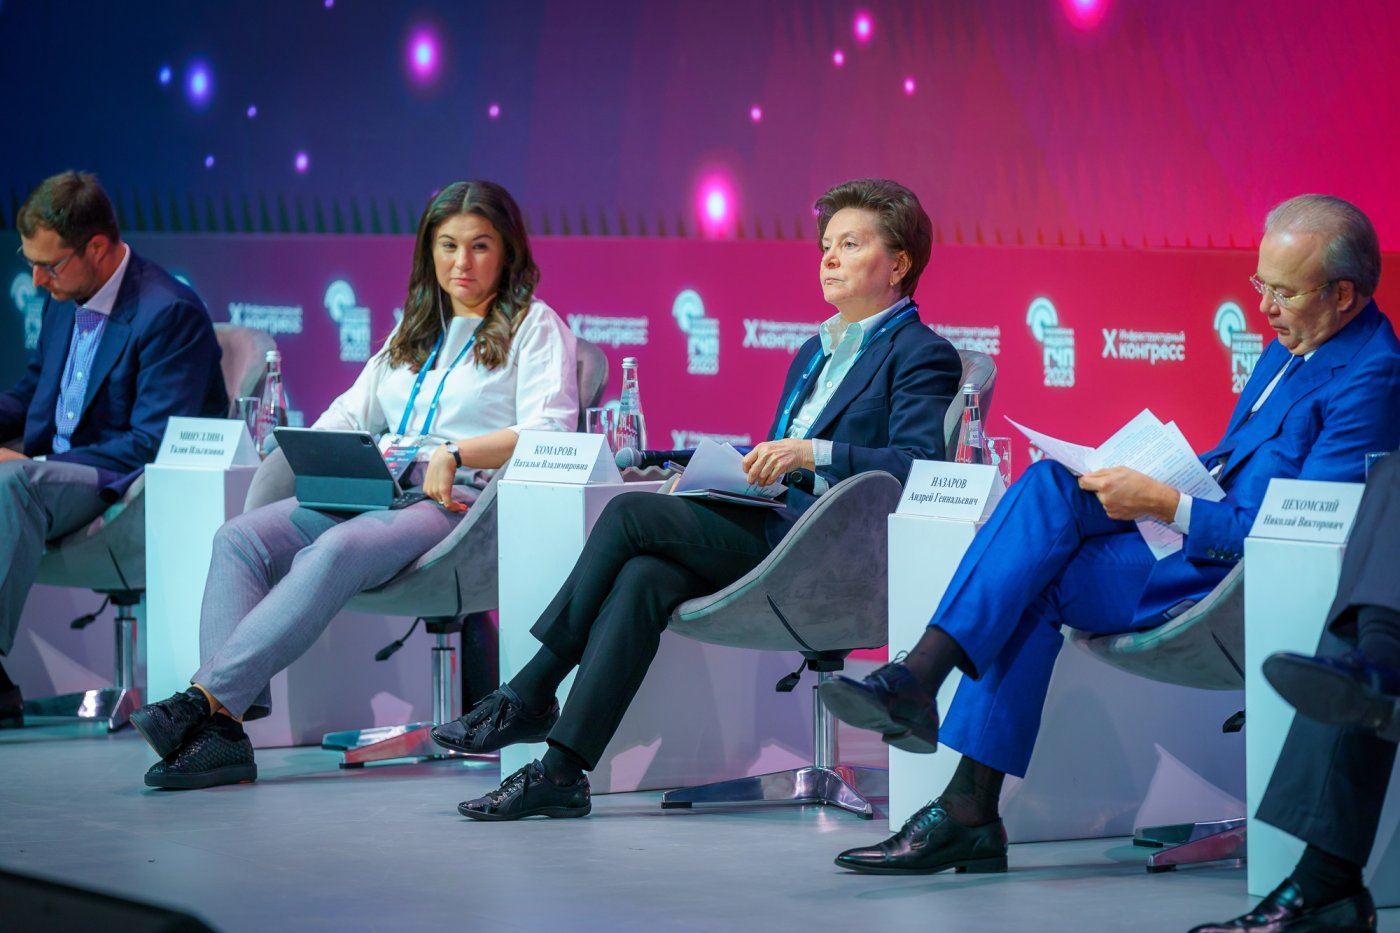 Губернатор Югры Наталья Комарова выступила на сессии Российской недели ГЧП, посвящённой привлечению инвесторов в регионы